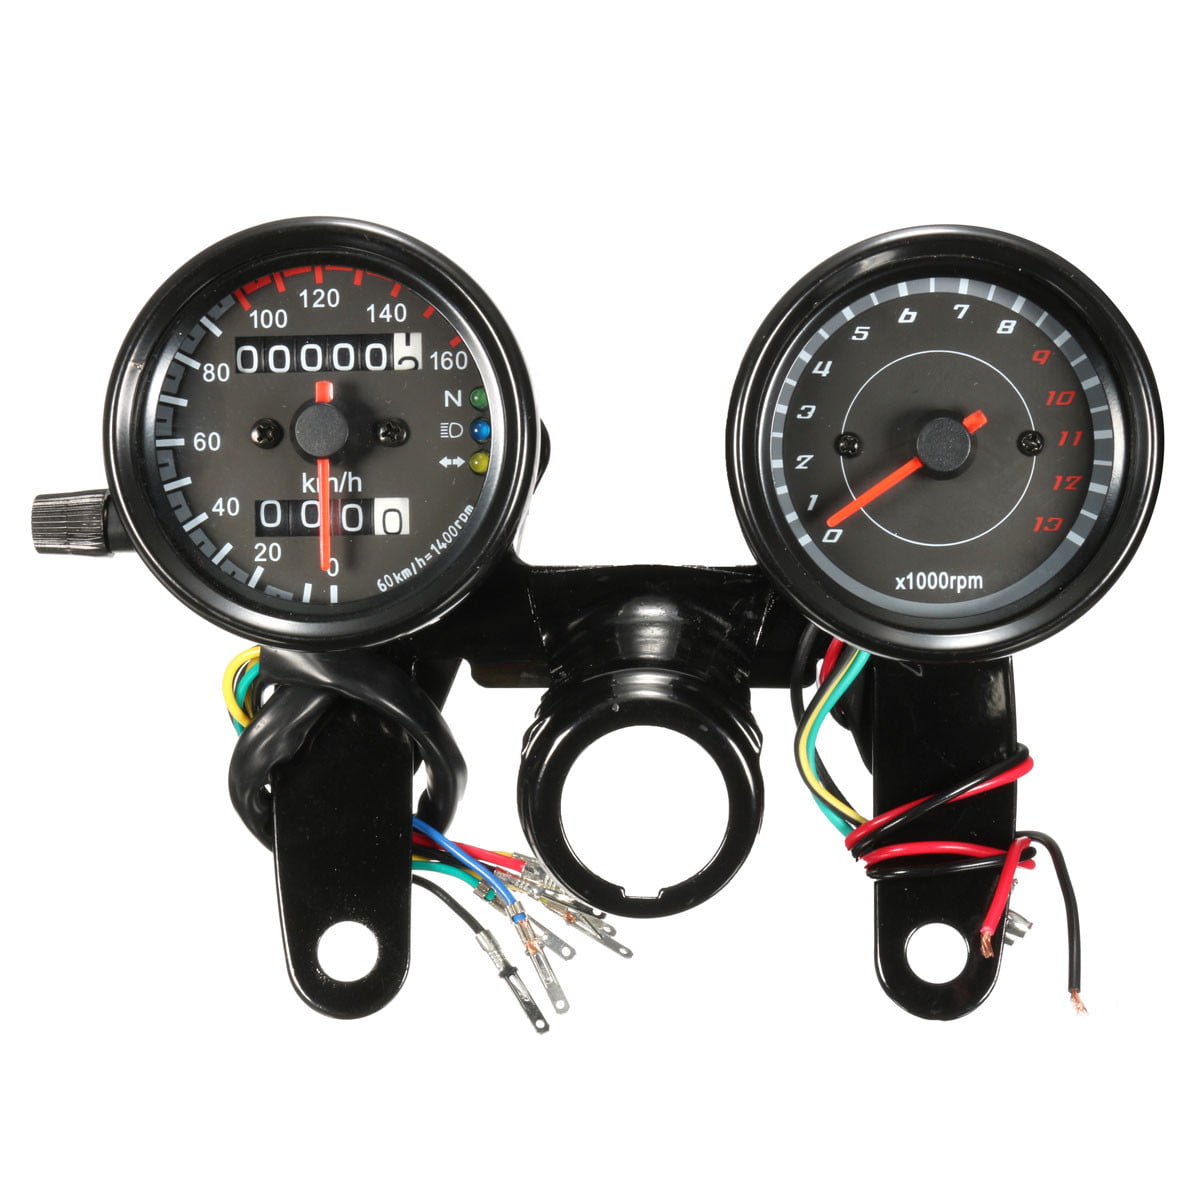 DEALPEAK Universal DC 12V Motorcycle LED Backlight Tachometer Electronic Tach Meter Gauge 